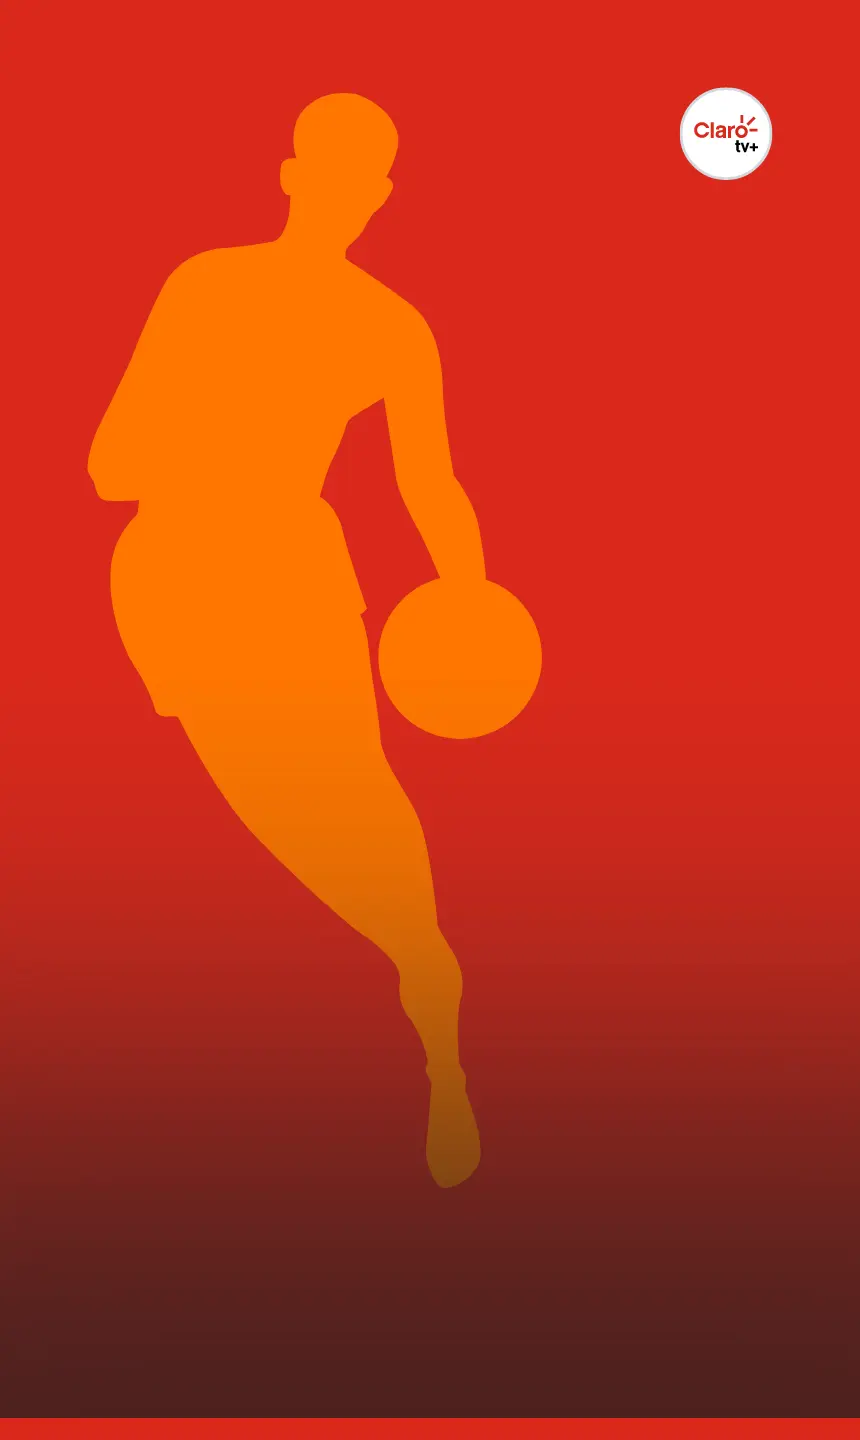 Onde assistir à NBA online gratuitamente com qualidade? - Informe Especial  - Jornal NH